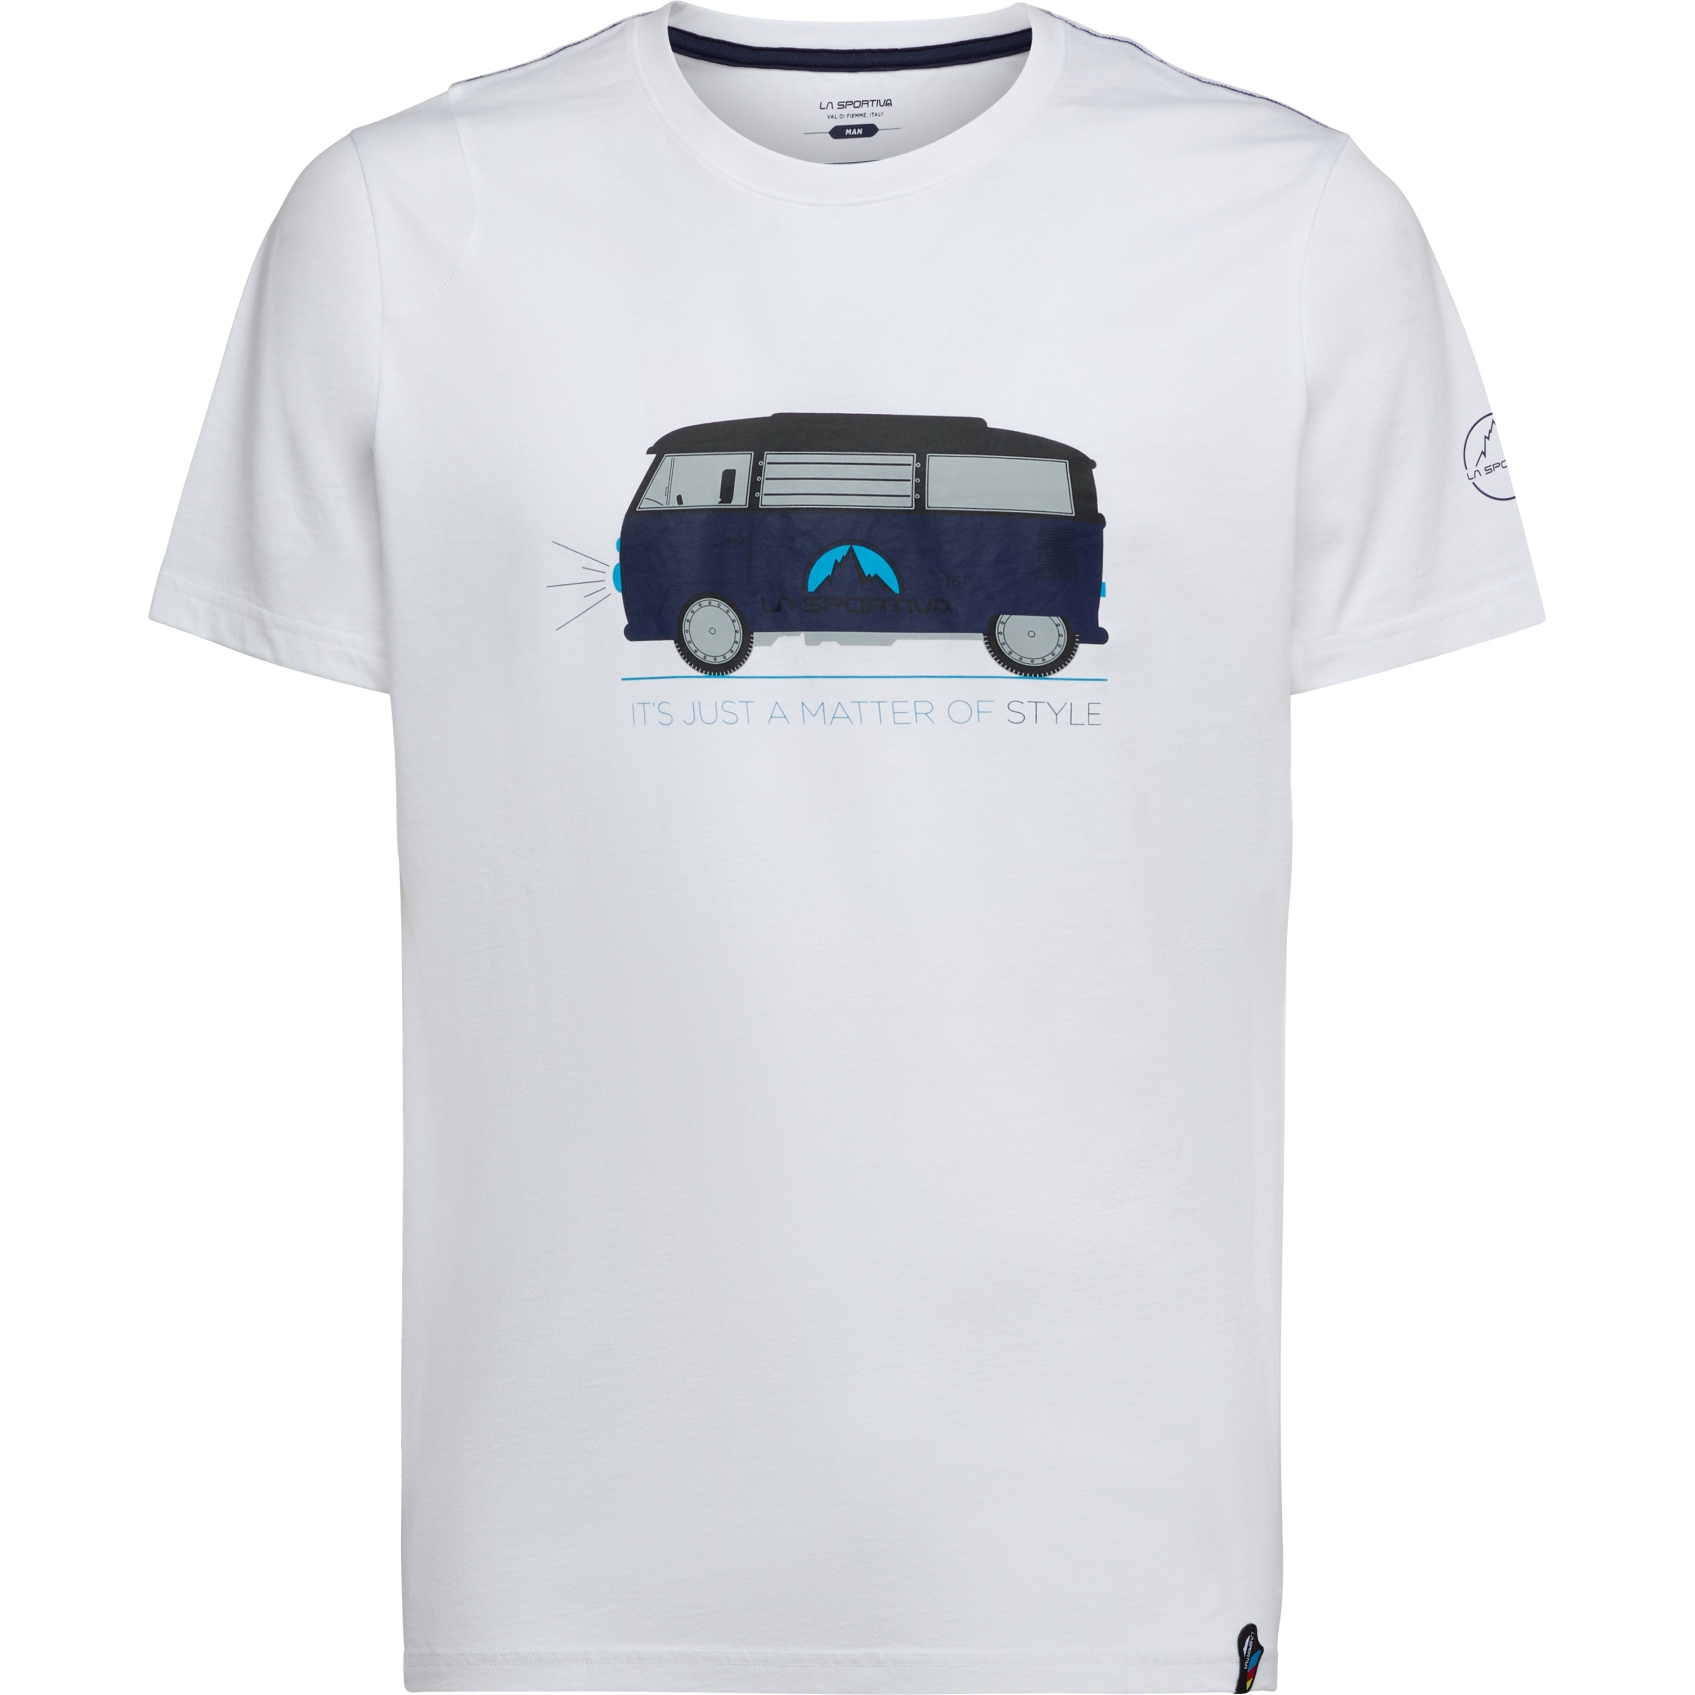 Produktbild von La Sportiva Van T-Shirt Herren - White/Deep Sea